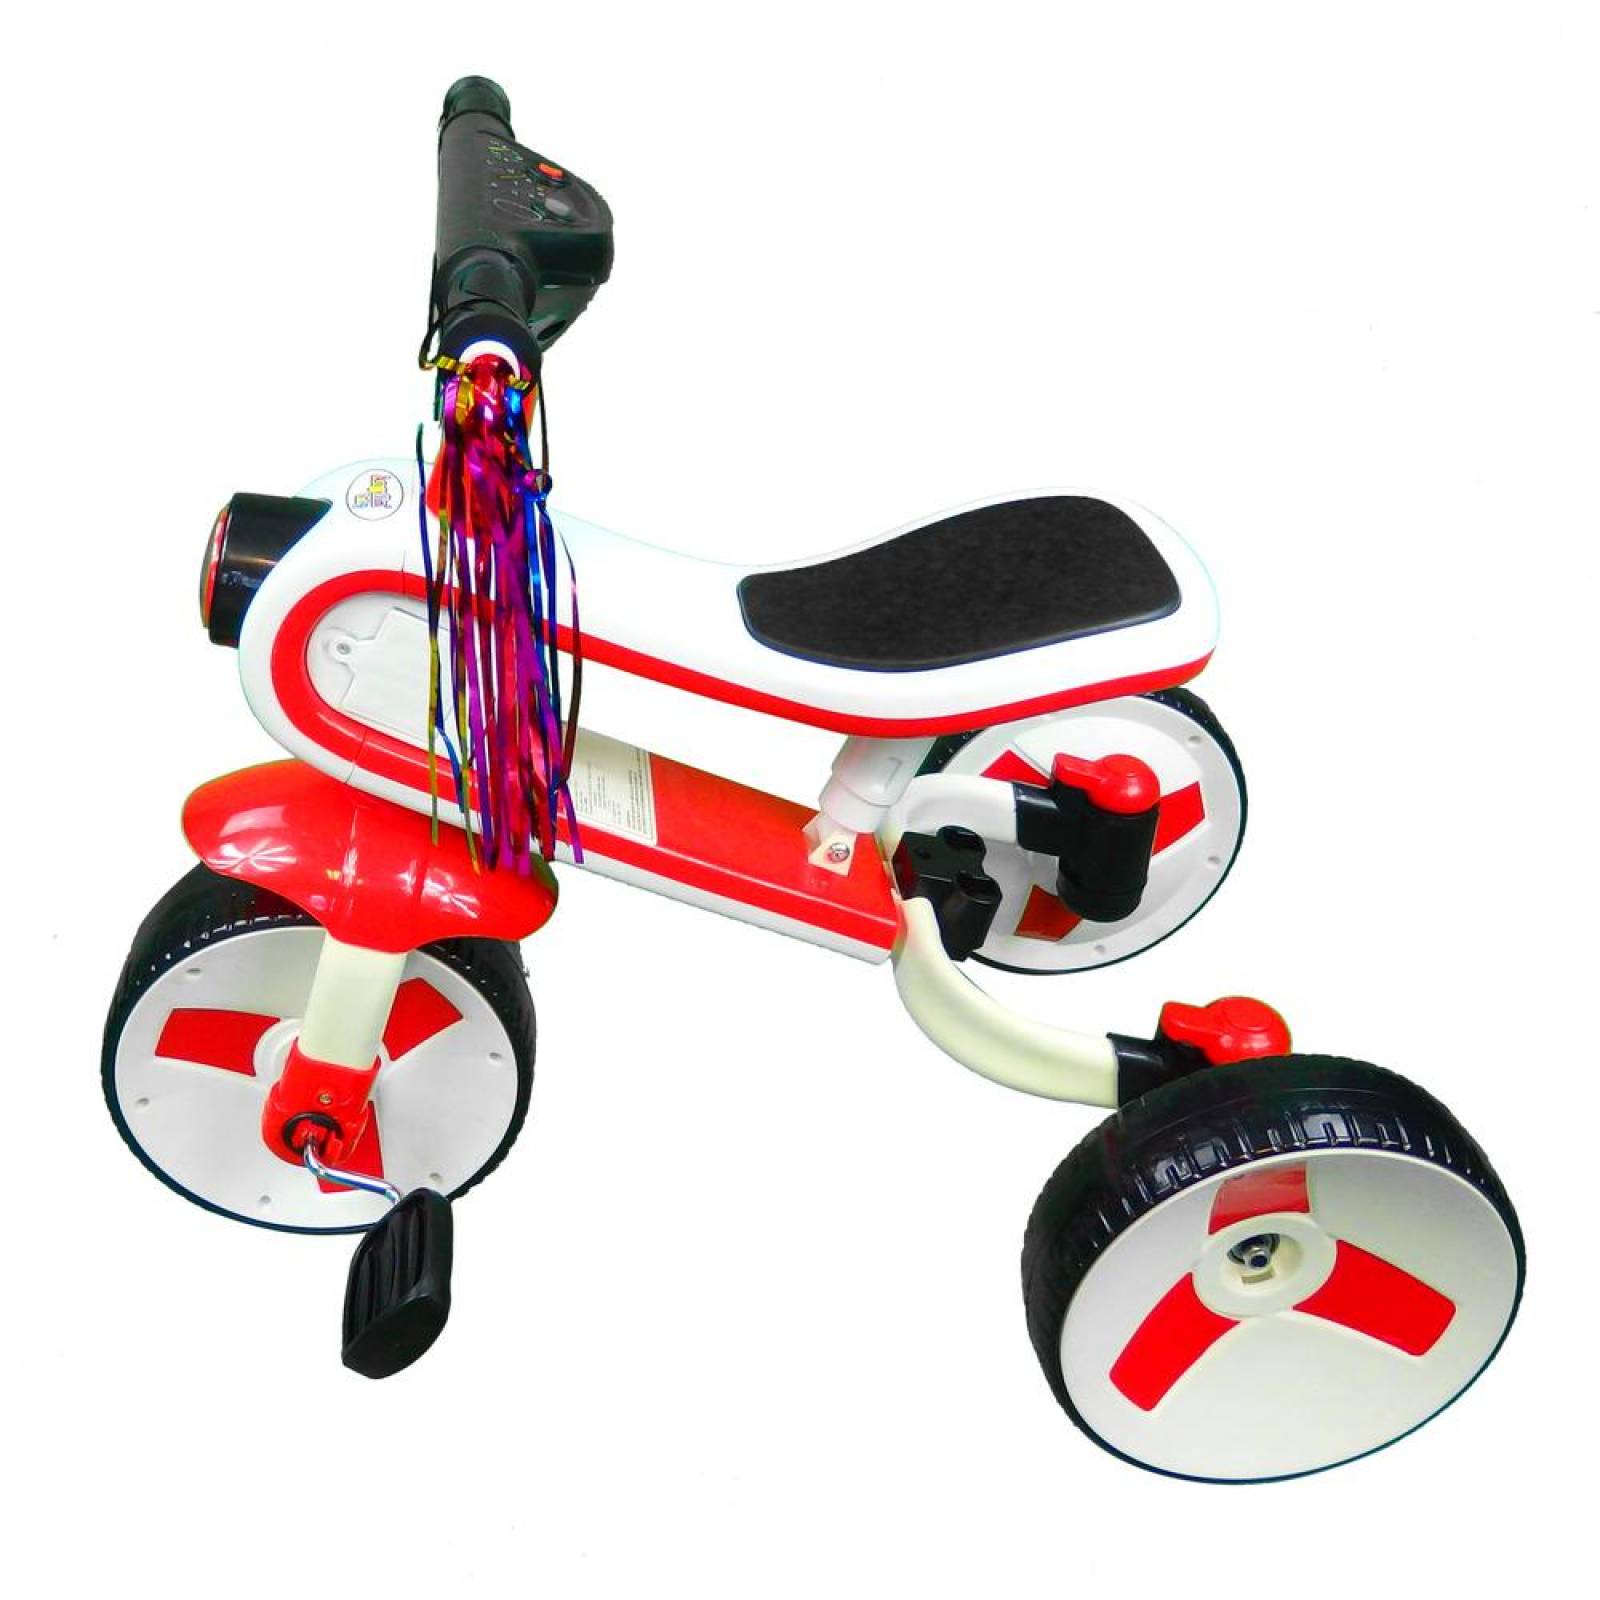 Triciclo Bicicleta y correpasillos 3 en 1 hasta 6 años Rojo 